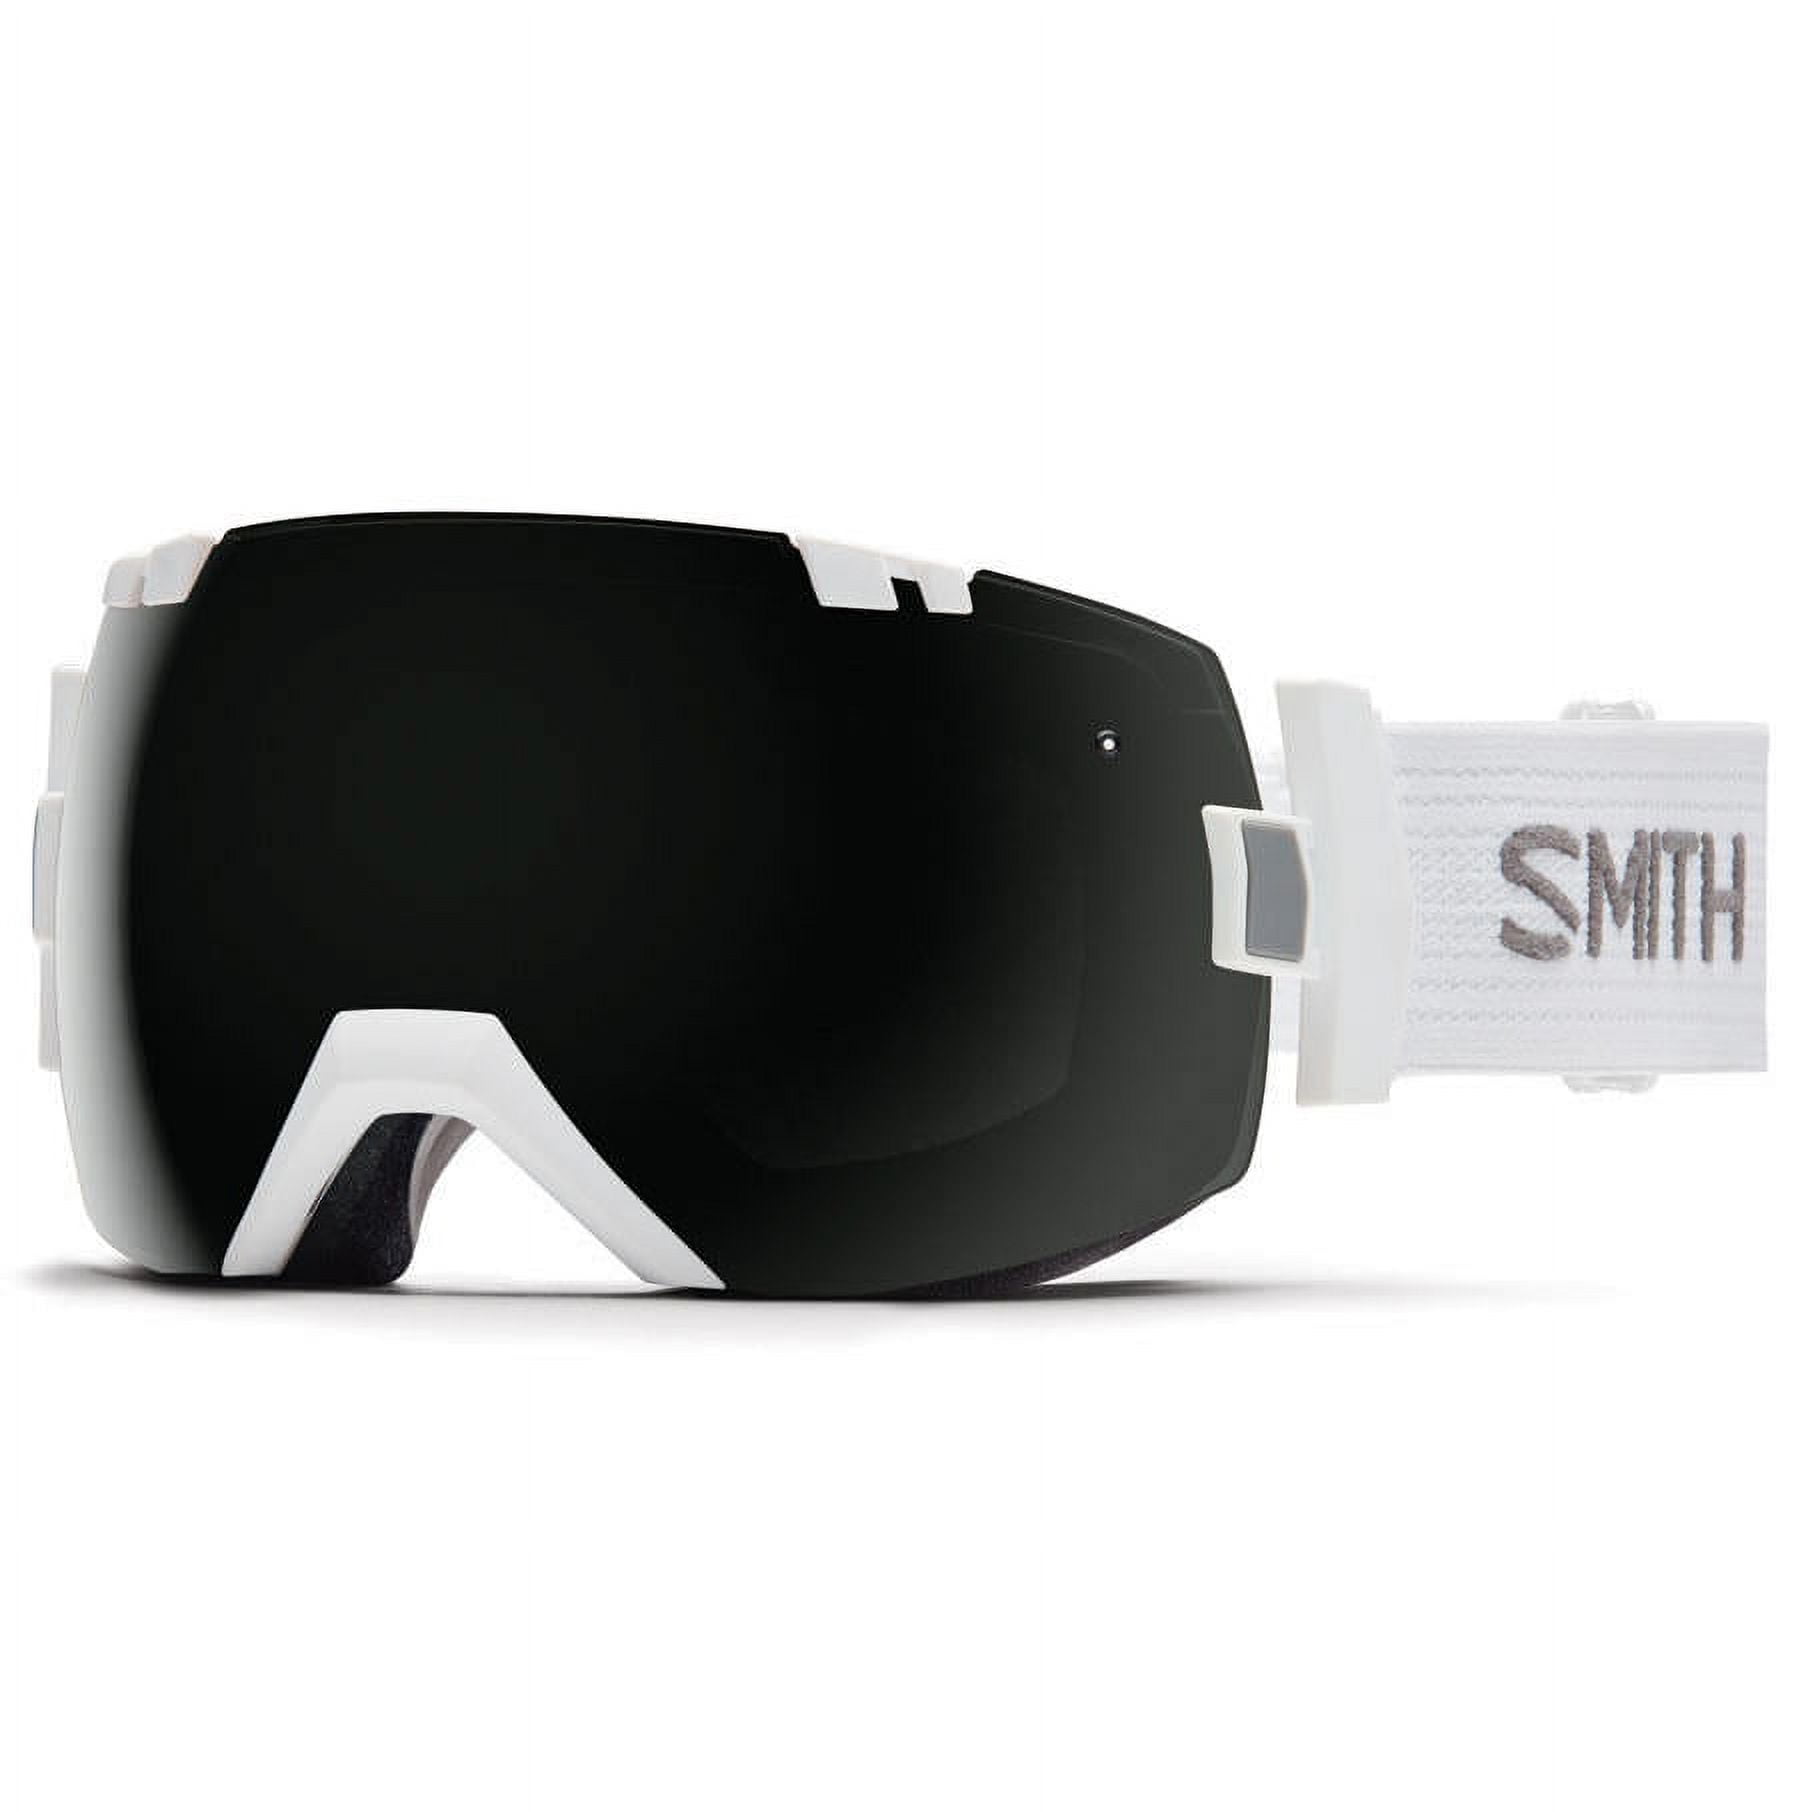 Smith Optics - I/OX Snow Goggles IL7BKWT17 - White/Blackout